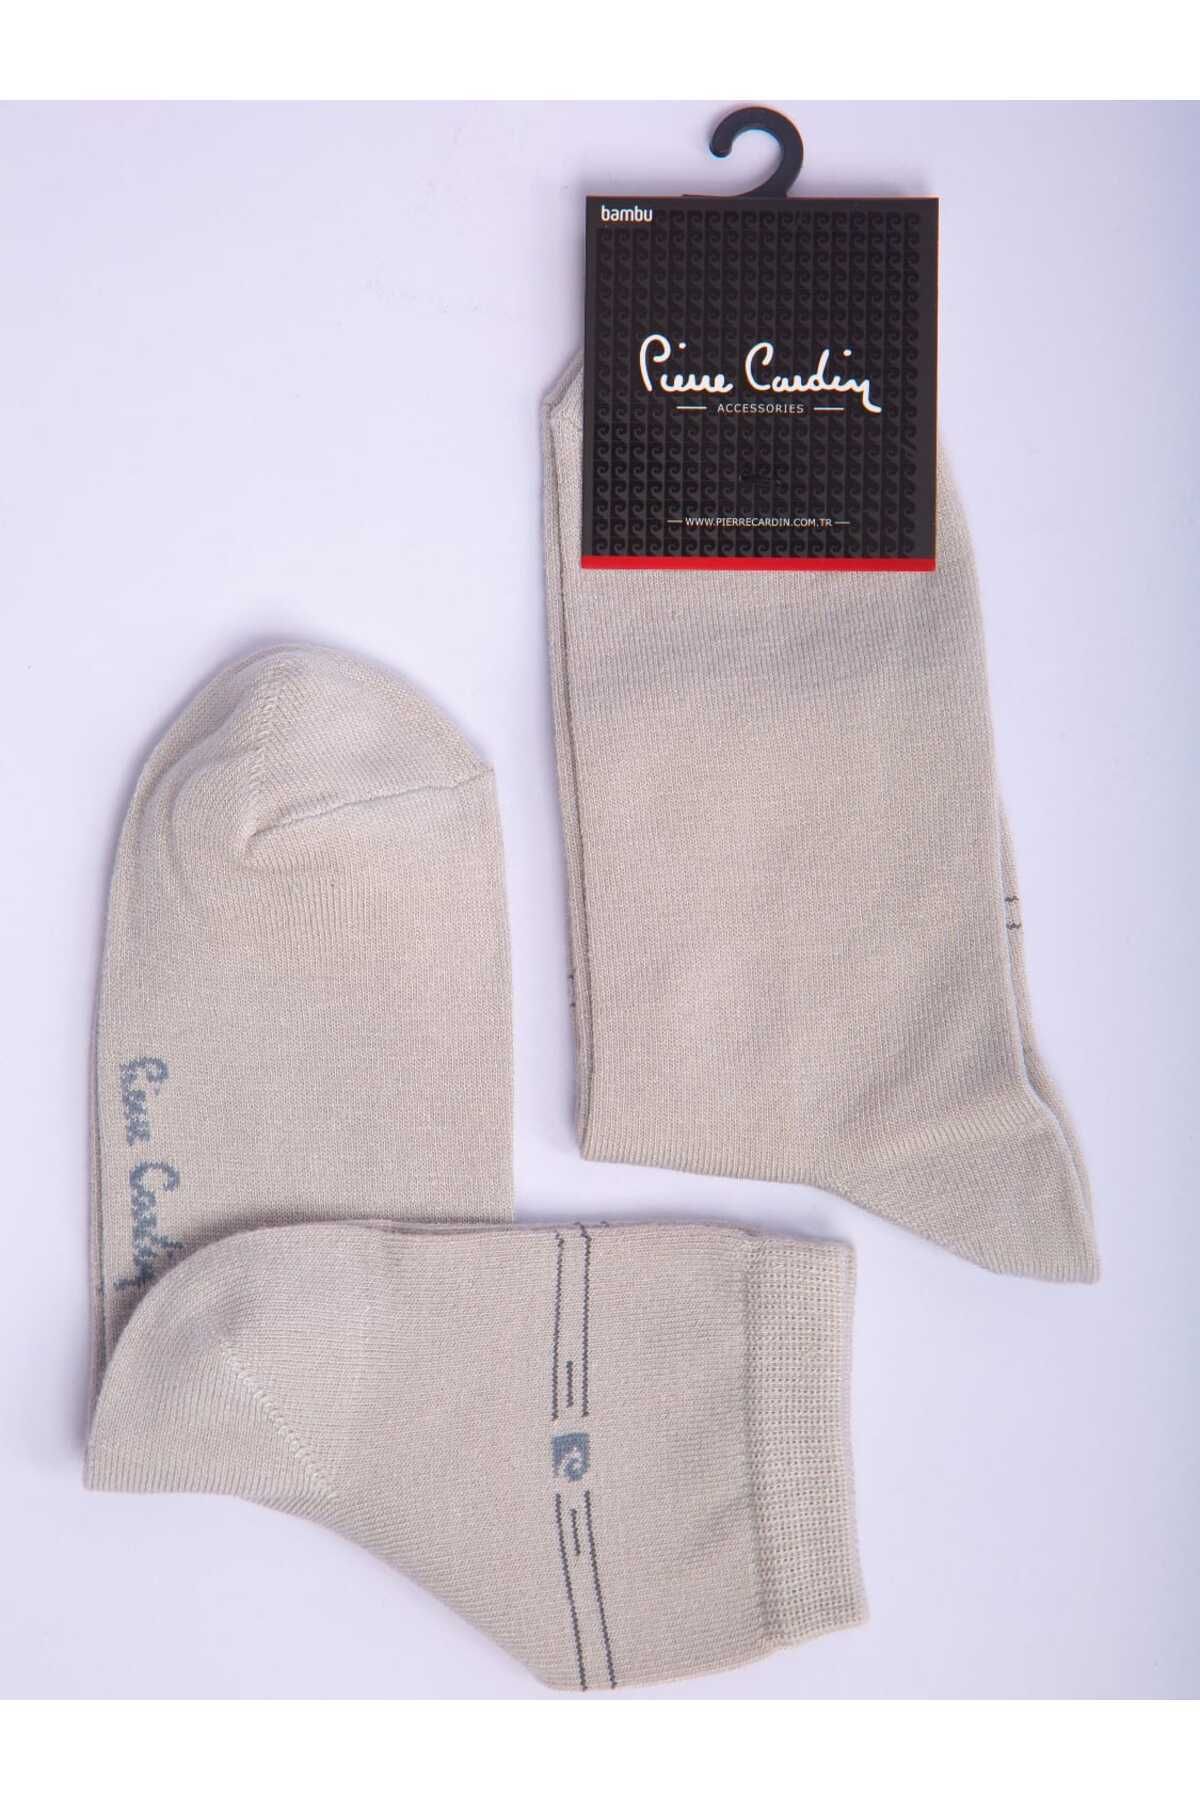 Pierre Cardin Bambu 6’lı Gri Renk Erkek Kısa Soket Çorap Pc-3024